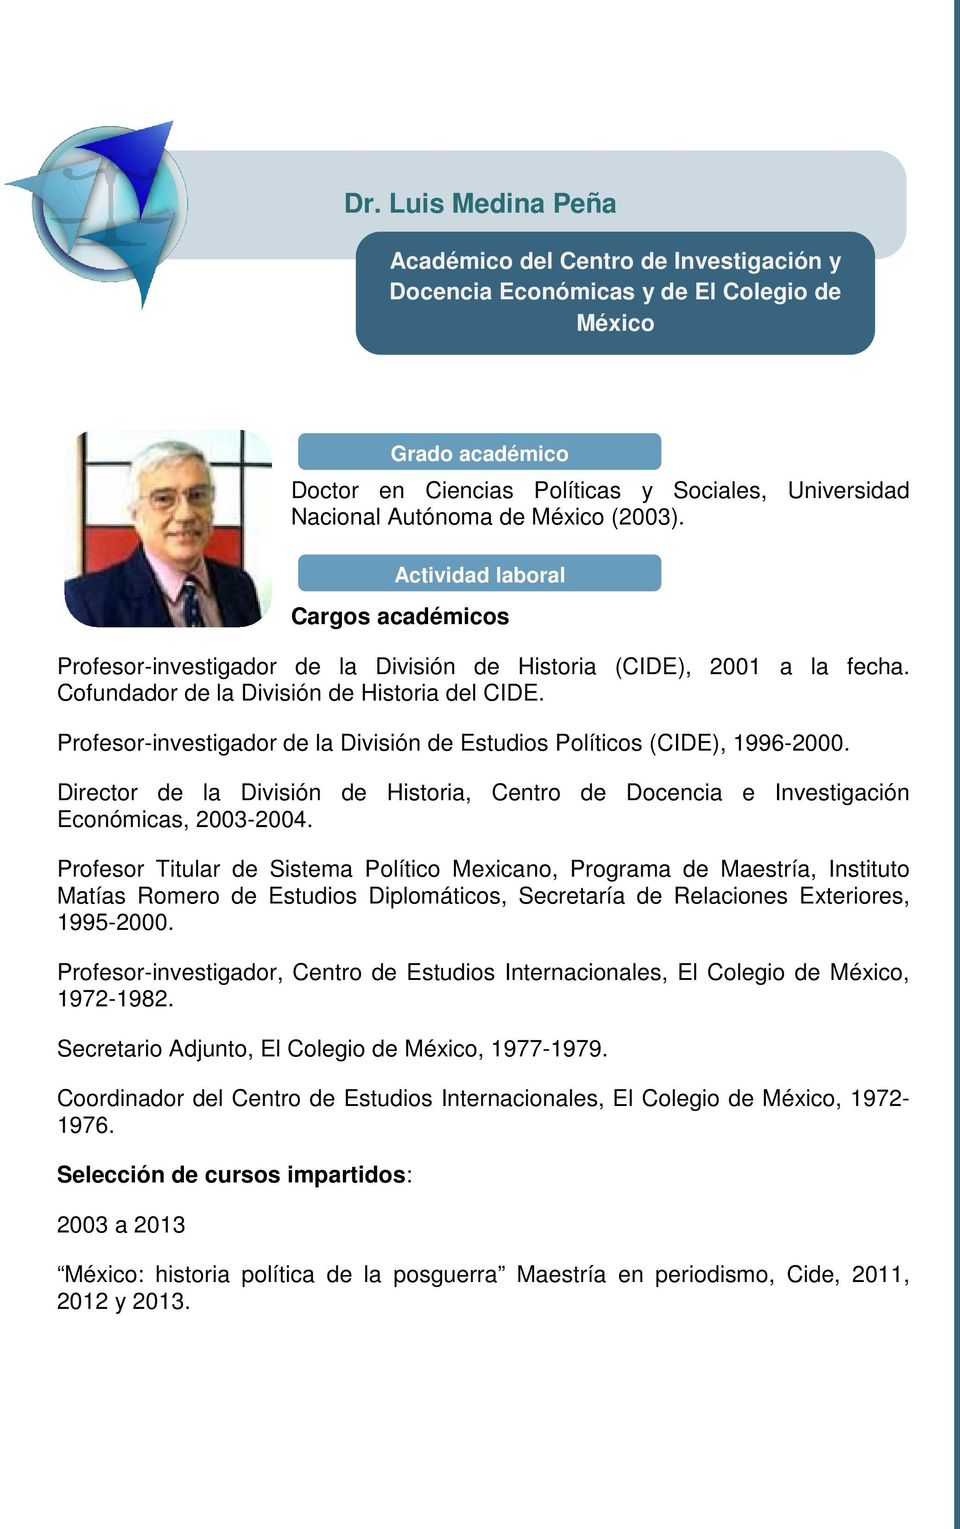 Profesor-investigador de la División de Estudios Políticos (CIDE), 1996-2000. Director de la División de Historia, Centro de Docencia e Investigación Económicas, 2003-2004.